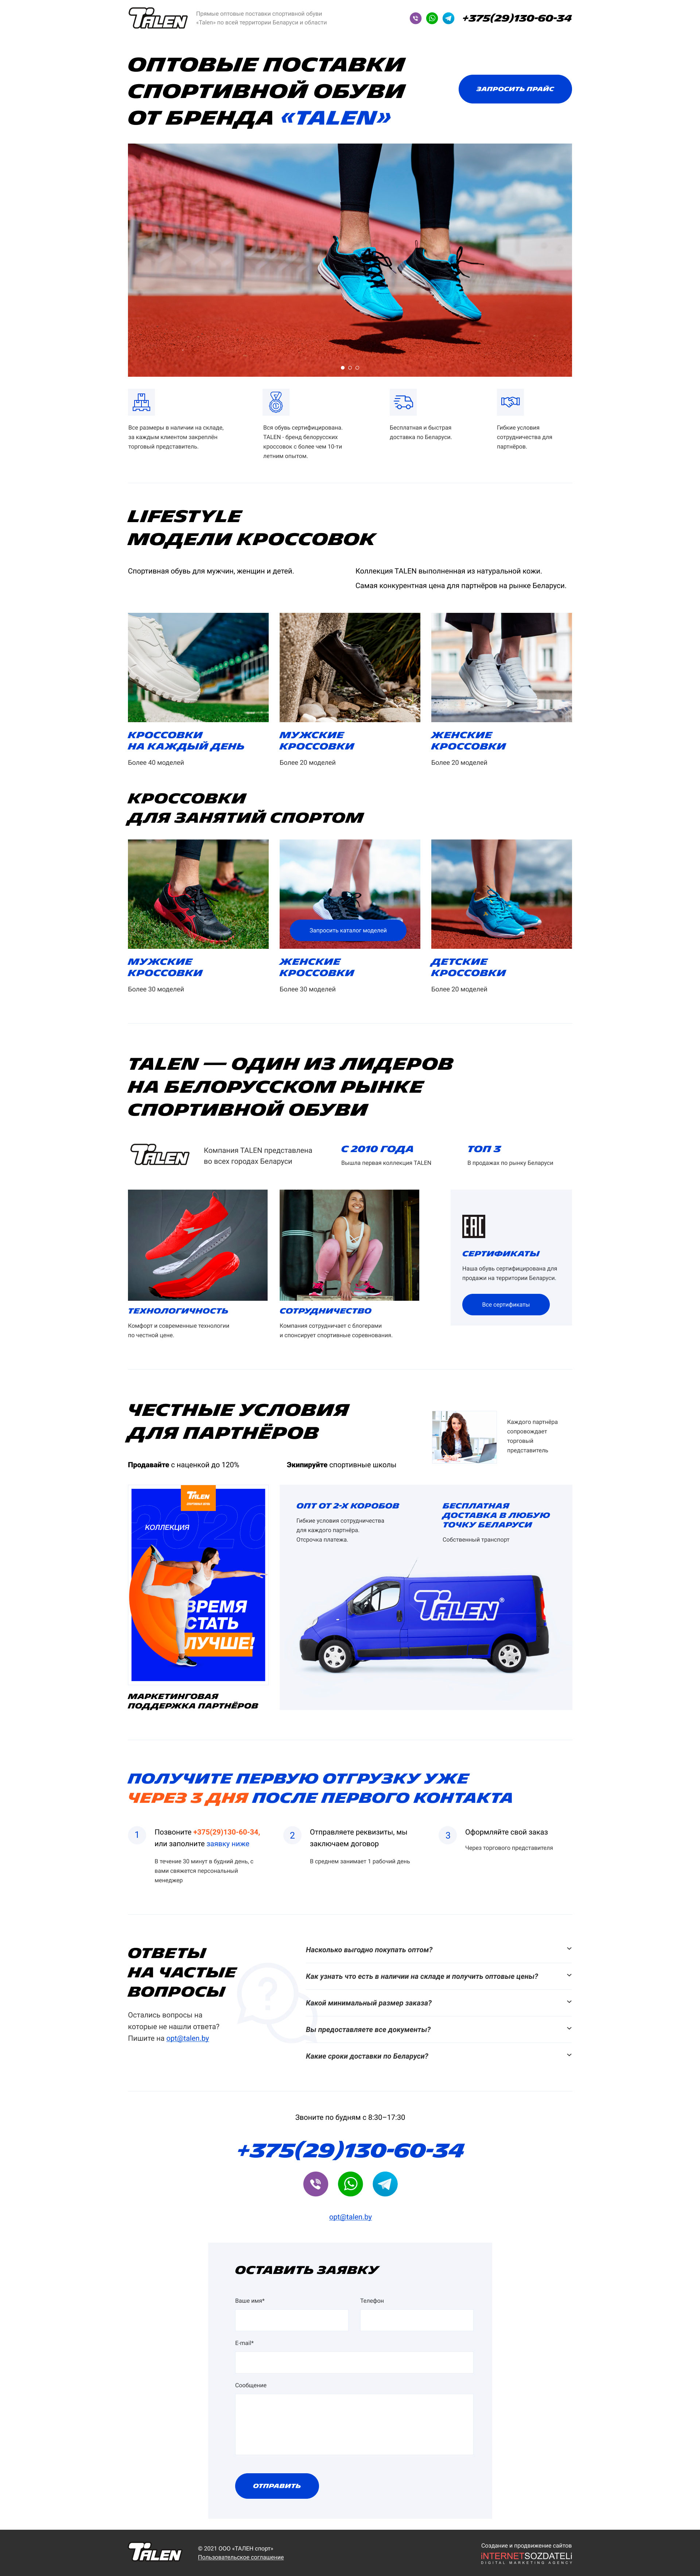 Создание сайта для оптовых продаж спортивной обуви «Talen» - главная 